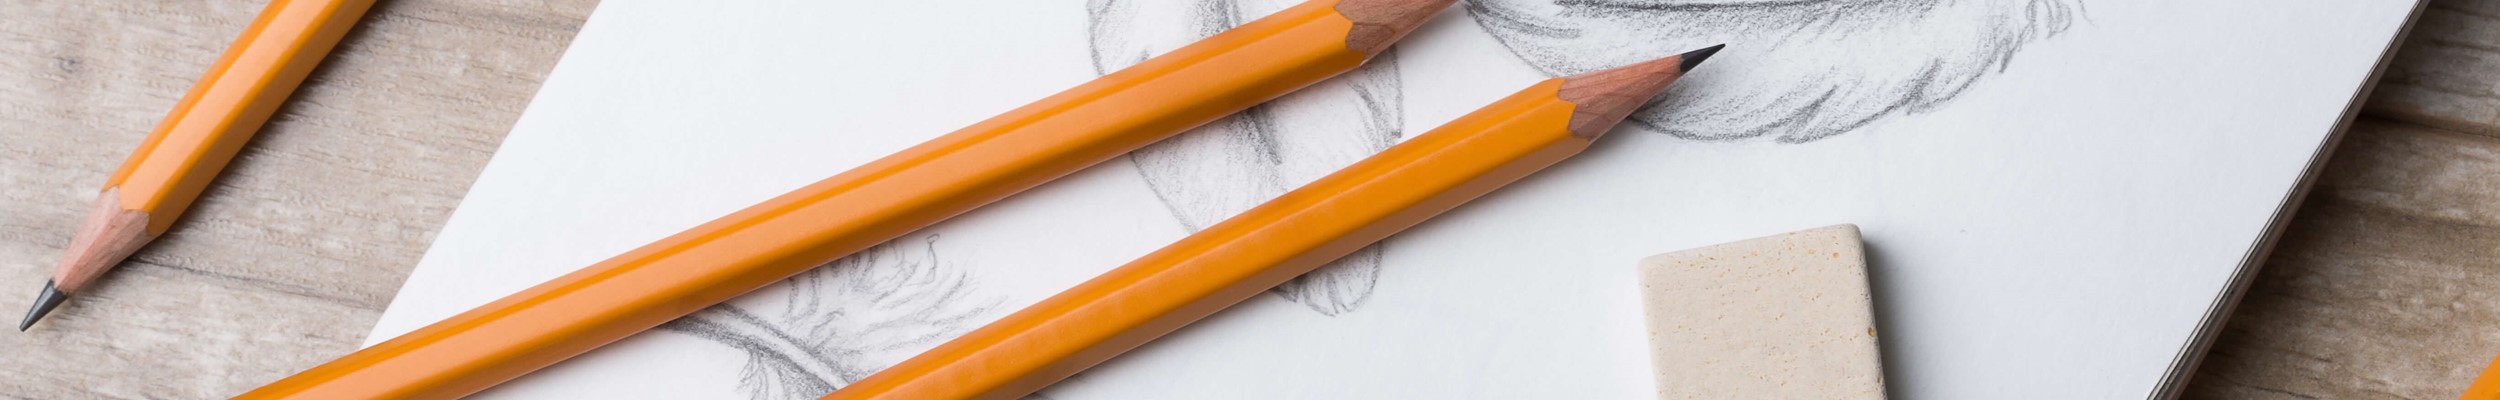 Pencils on top of sketchbook